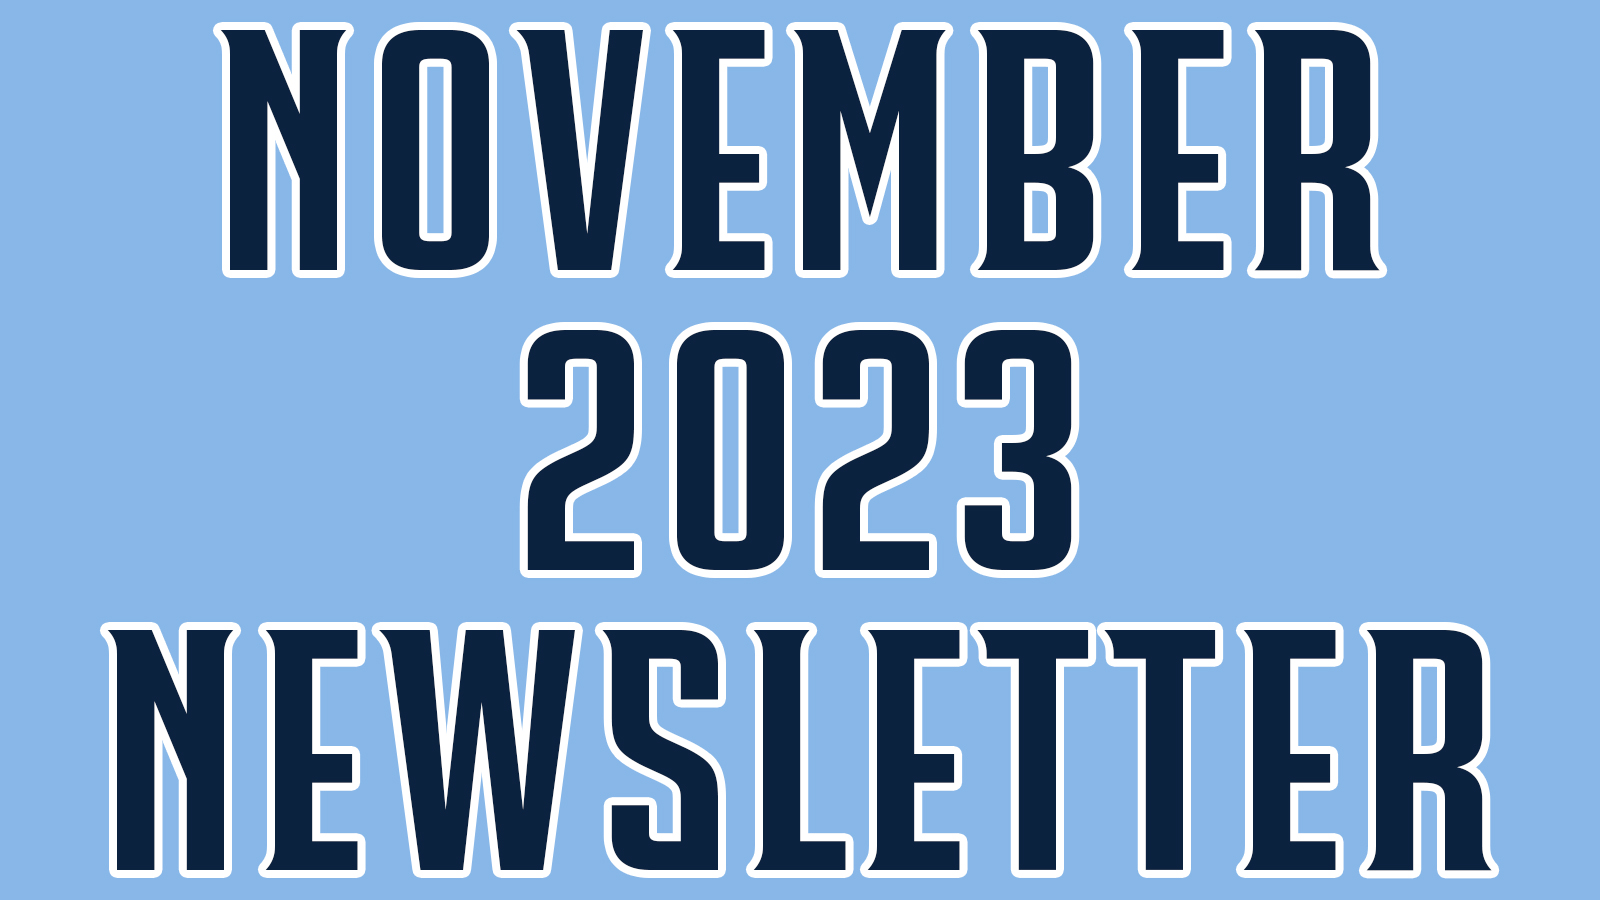 November 2023 Newsletter